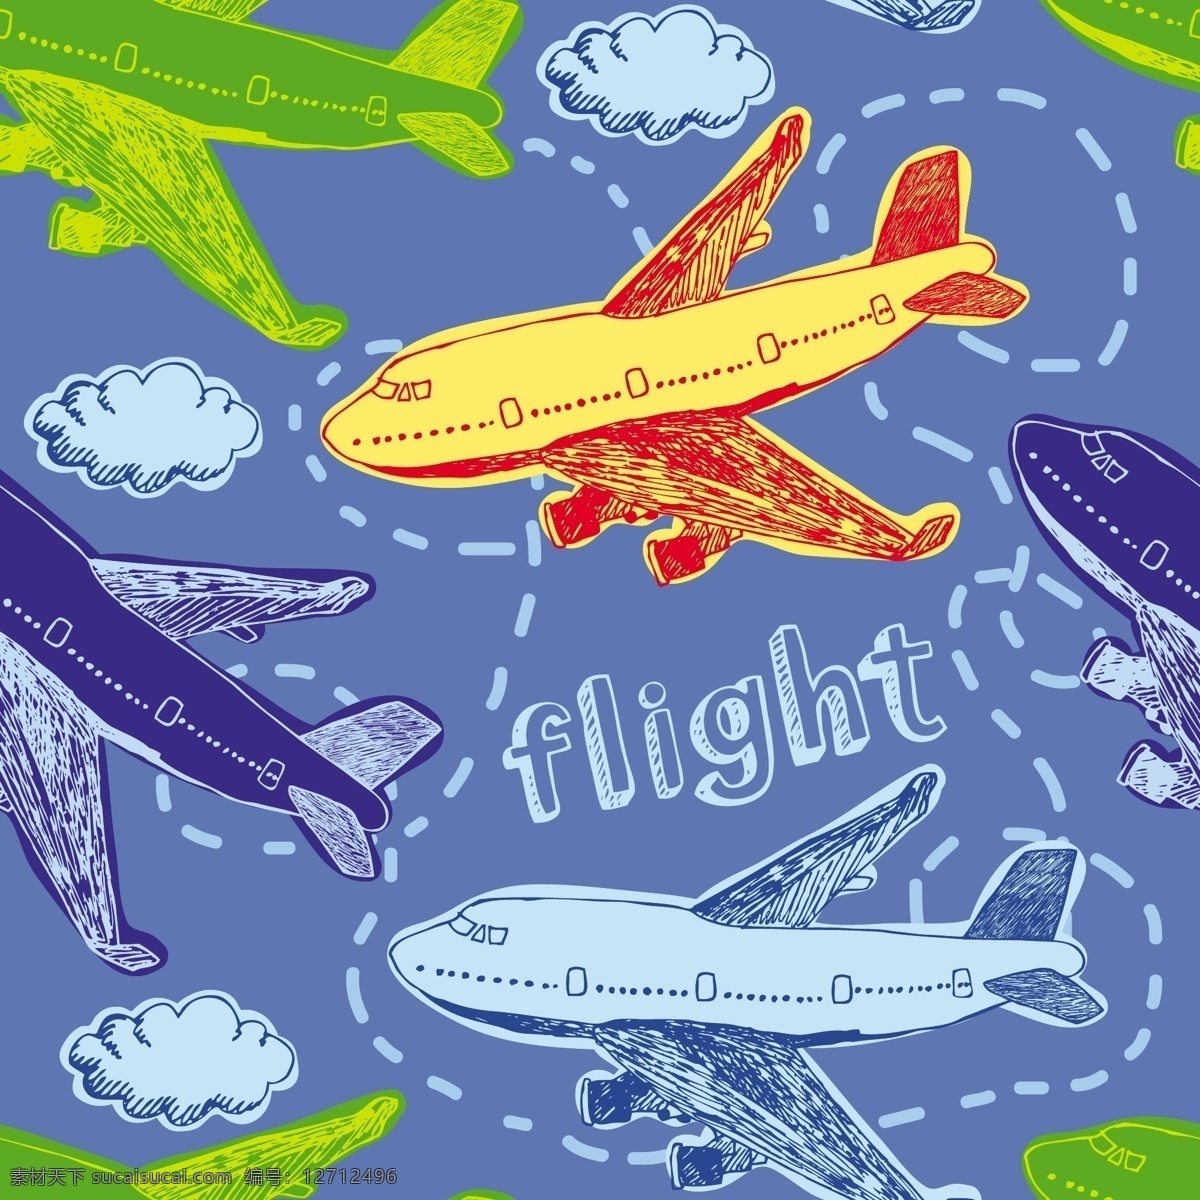 卡通飞机素材 飞机 飞机素材 卡通飞机 飞机设计 矢量飞机 旅游 卡通背景 展板背景 矢量素材 底纹背景 底纹边框 蓝色